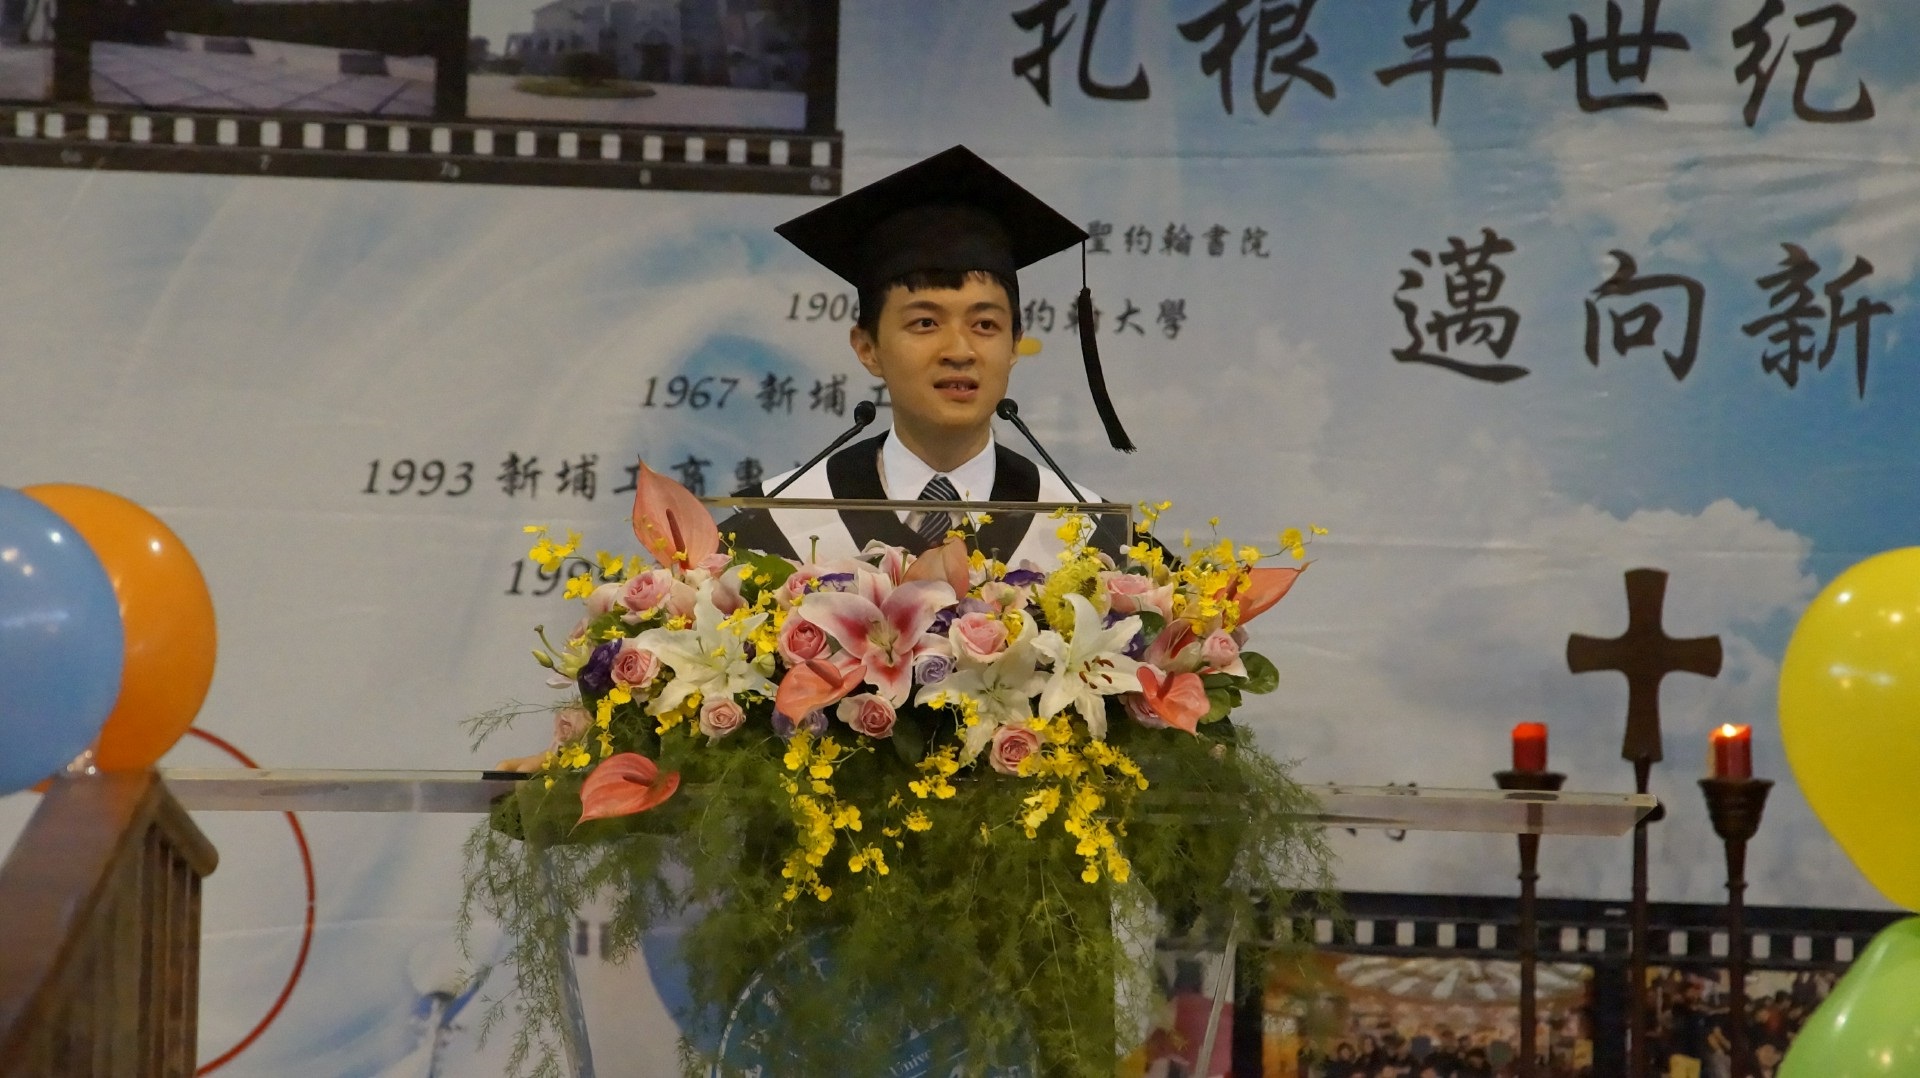 來自浙江湖州、甫自聖約翰科技大學畢業的陸生柯一，在學校畢業典禮上，代表畢業生上台致詞